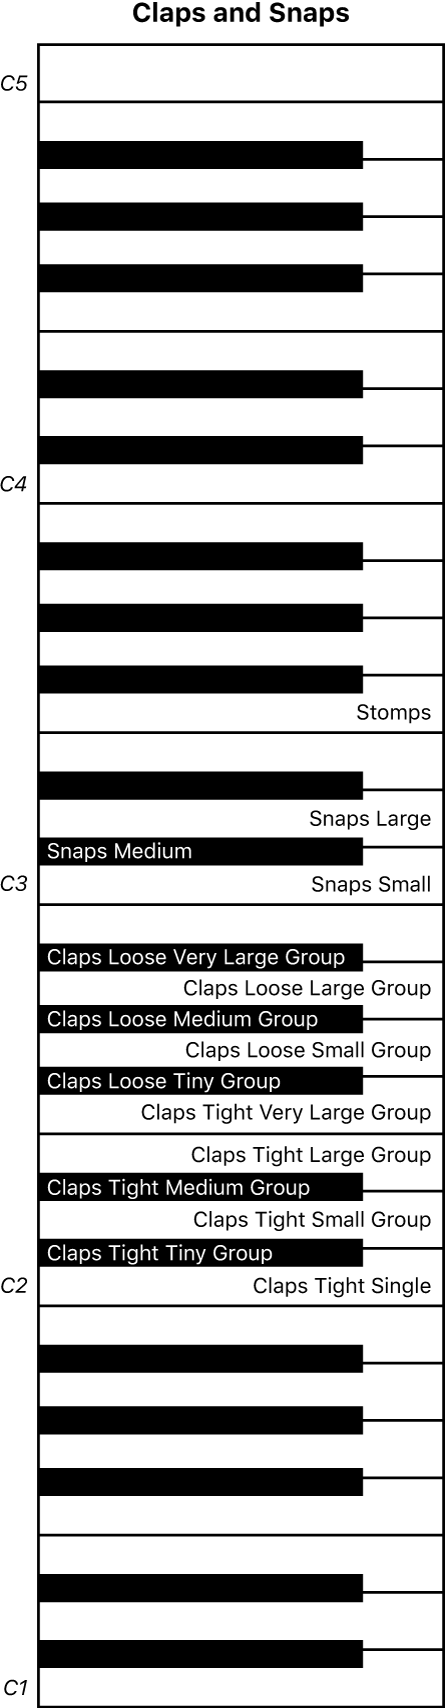 Abbildung. Keyboard-Mapping für Claps- und Snaps-Performance